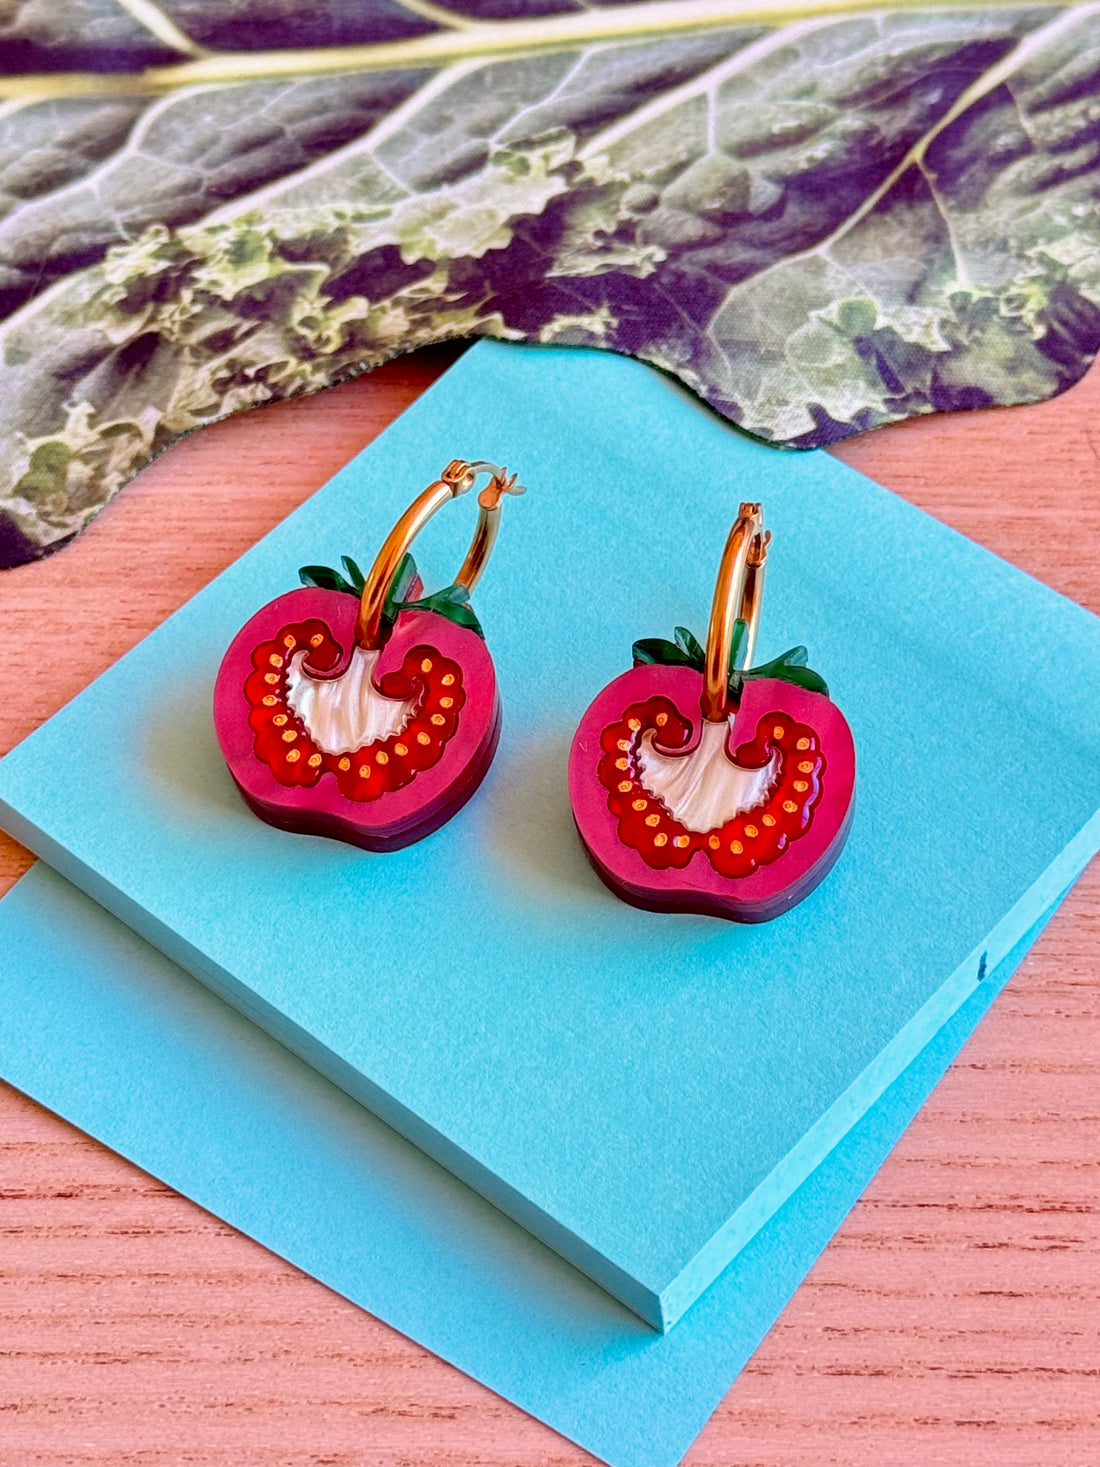 Mackbecks Cherry Tomato Earrings